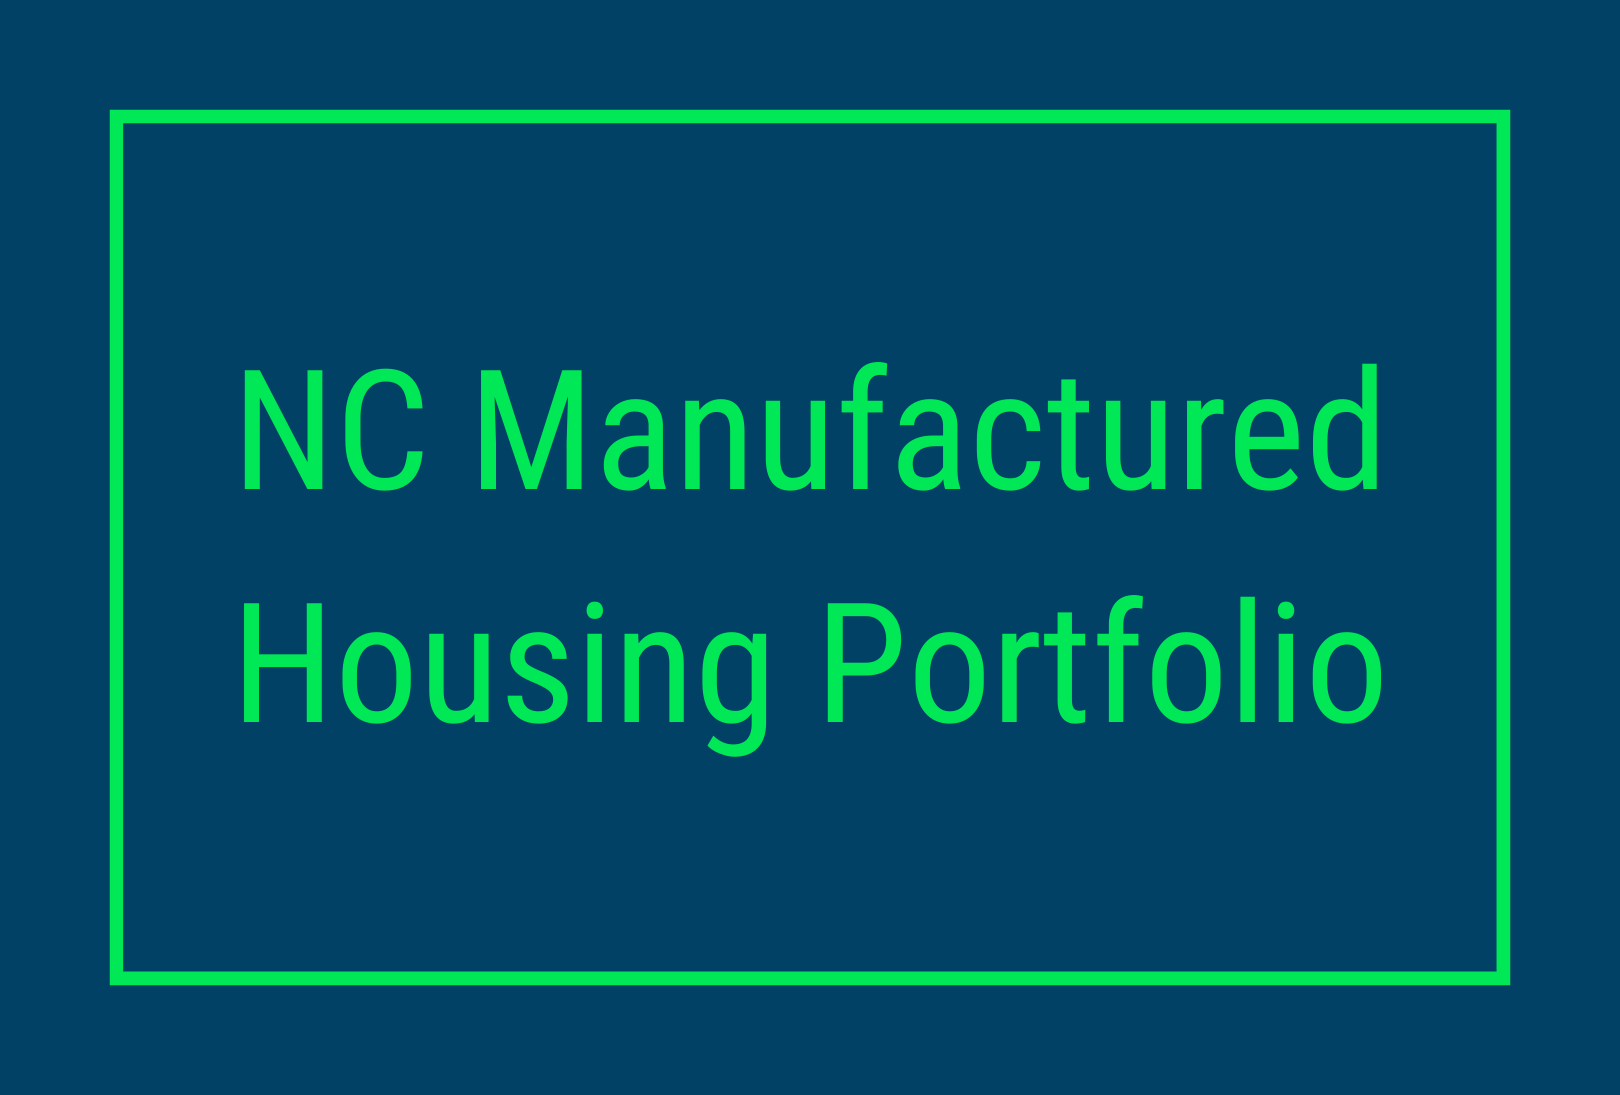 Manufactured Housing Portfolio